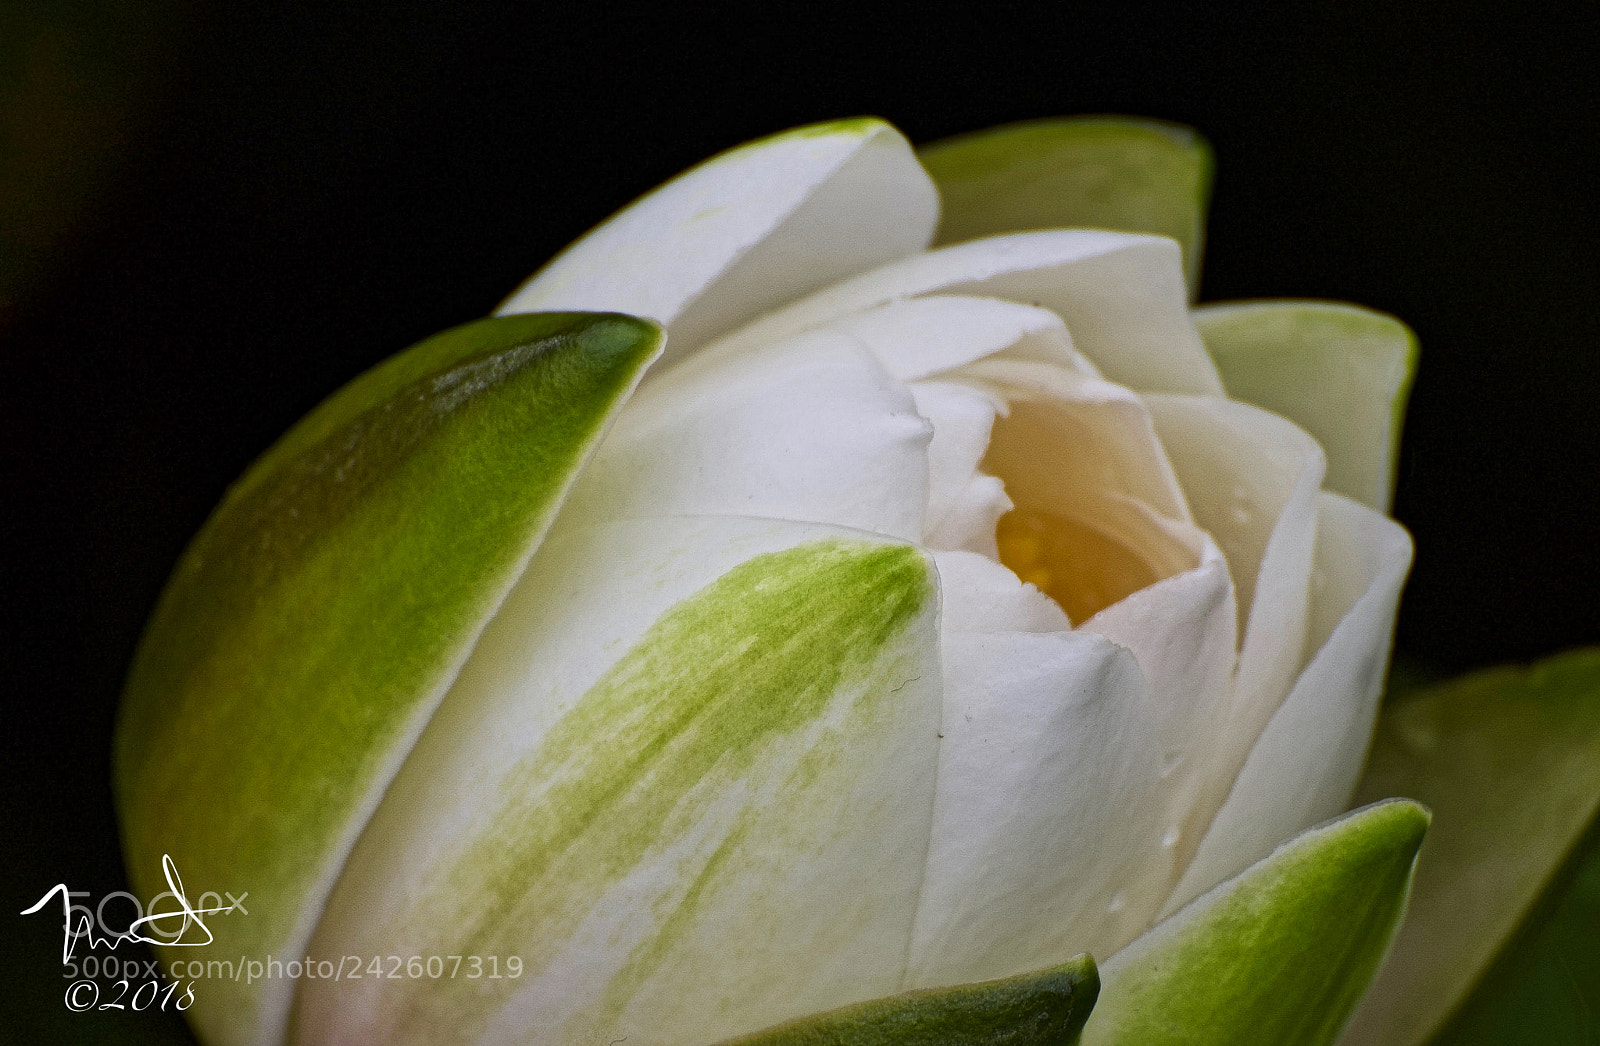 Nikon D750 sample photo. White lotus flower blooming photography